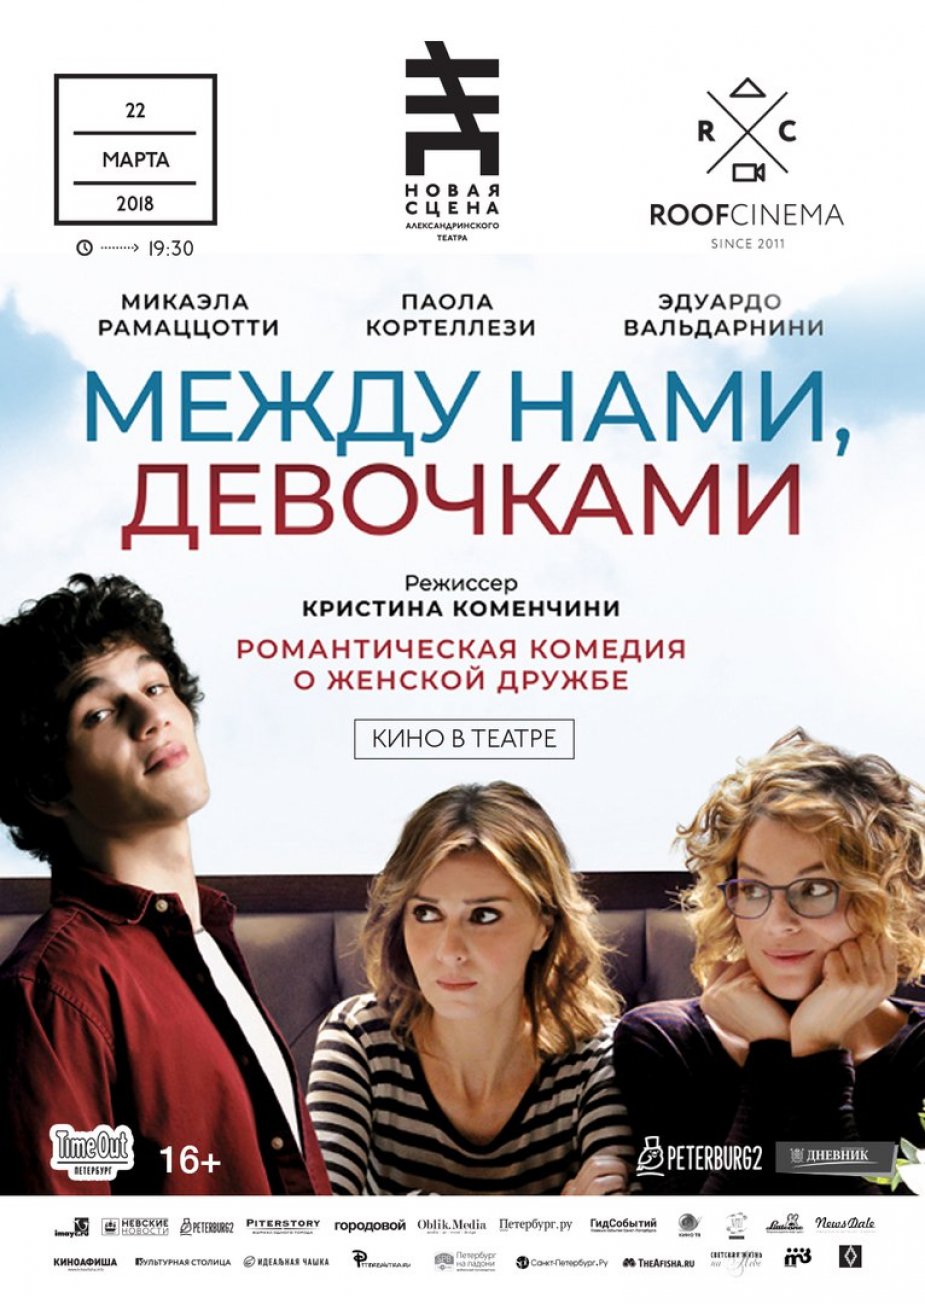 Новое итальянское кино в Александринском театре